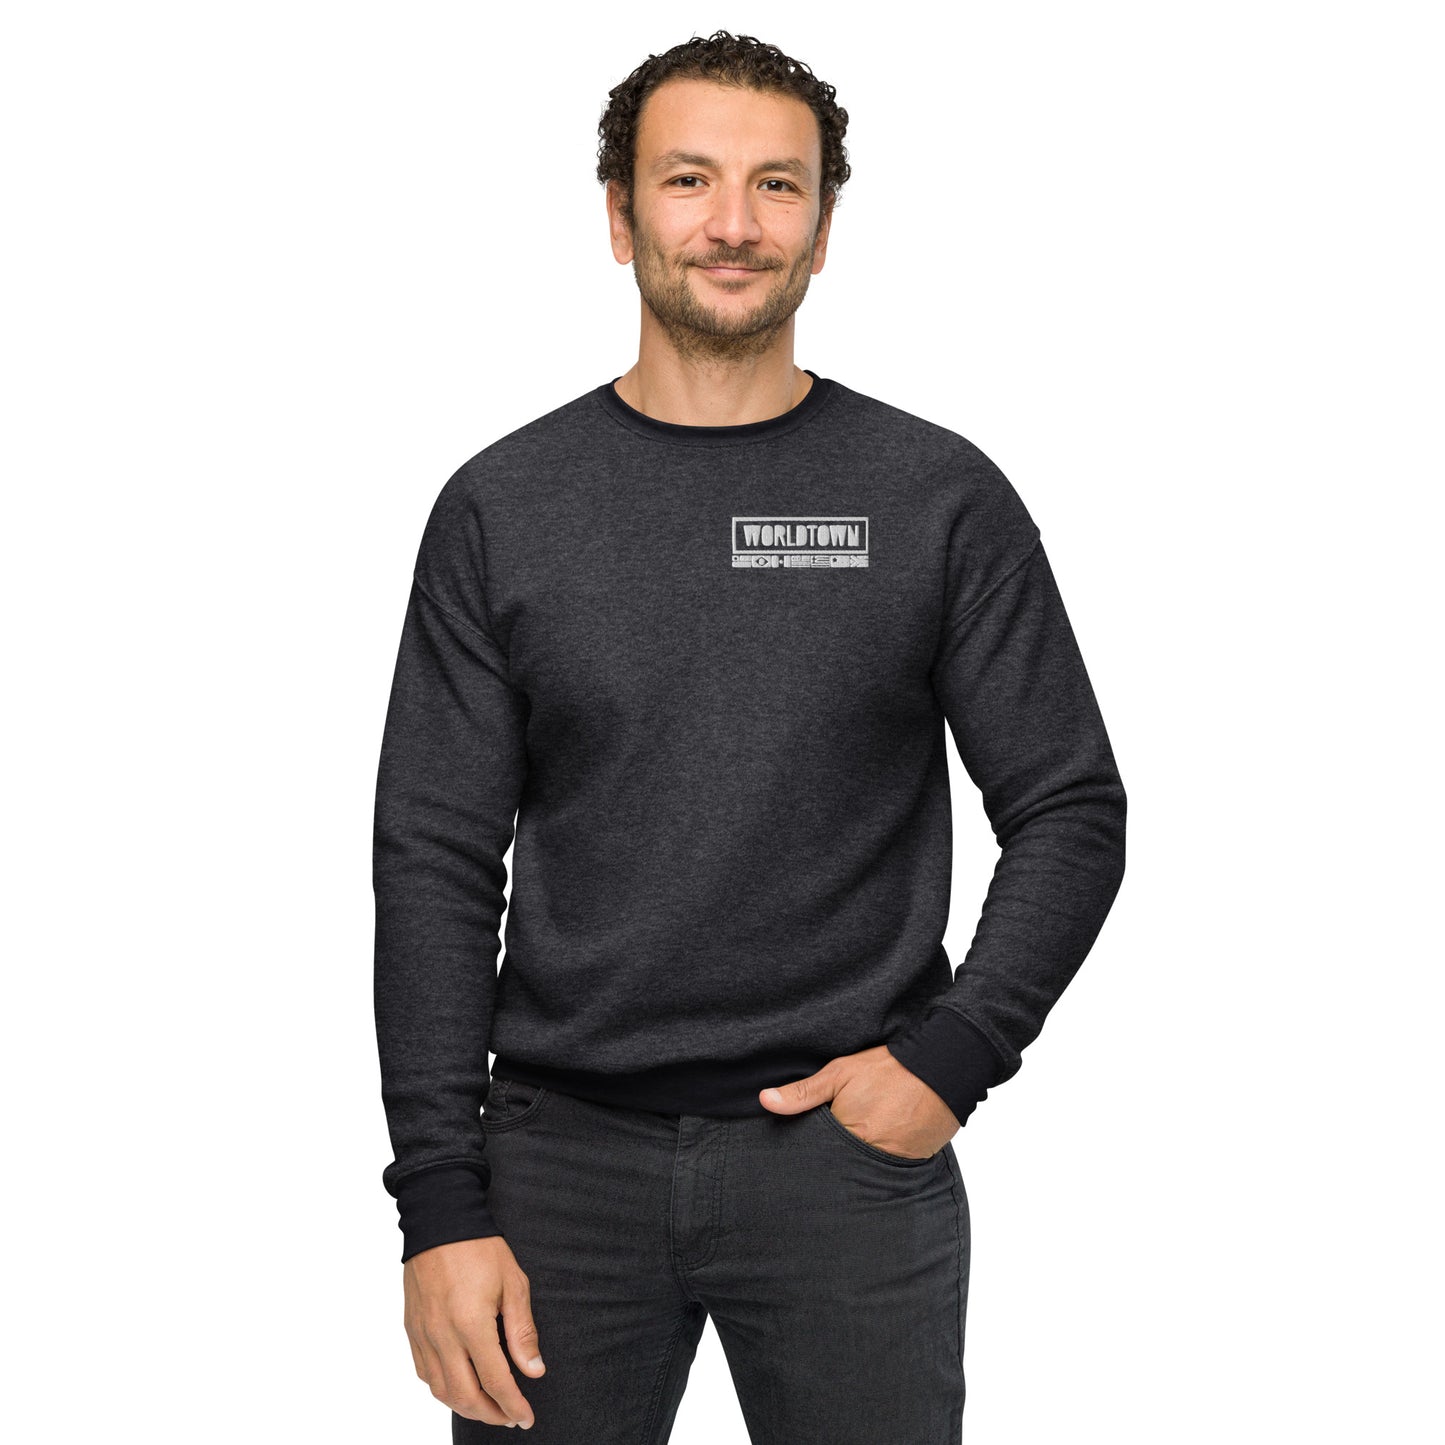 Worldtown Classic Unisex Sueded Fleece Sweatshirt